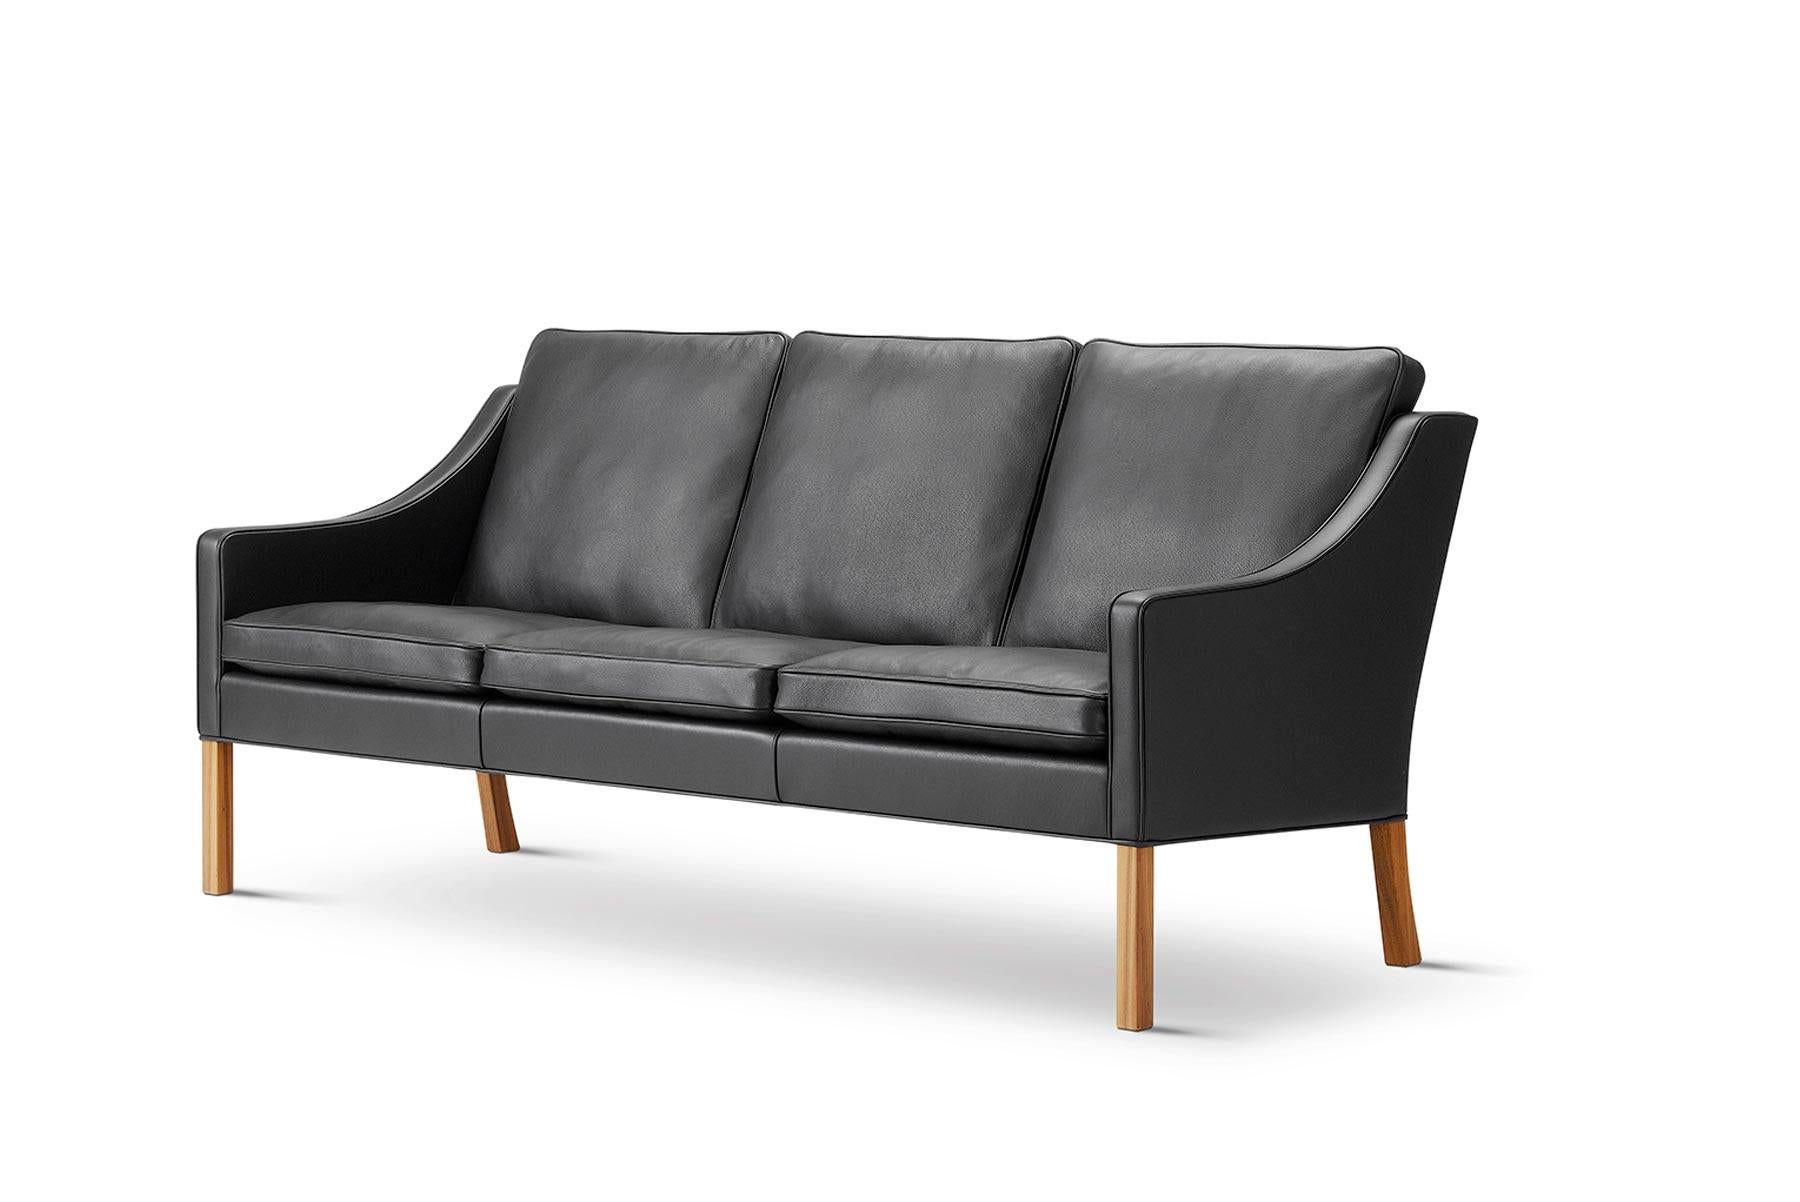 Das Dreisitzer-Sofa 2209 hat eine elegant geschwungene, abgesenkte Rückenlehne und wurde 1963 von Børge Mogensen entworfen.